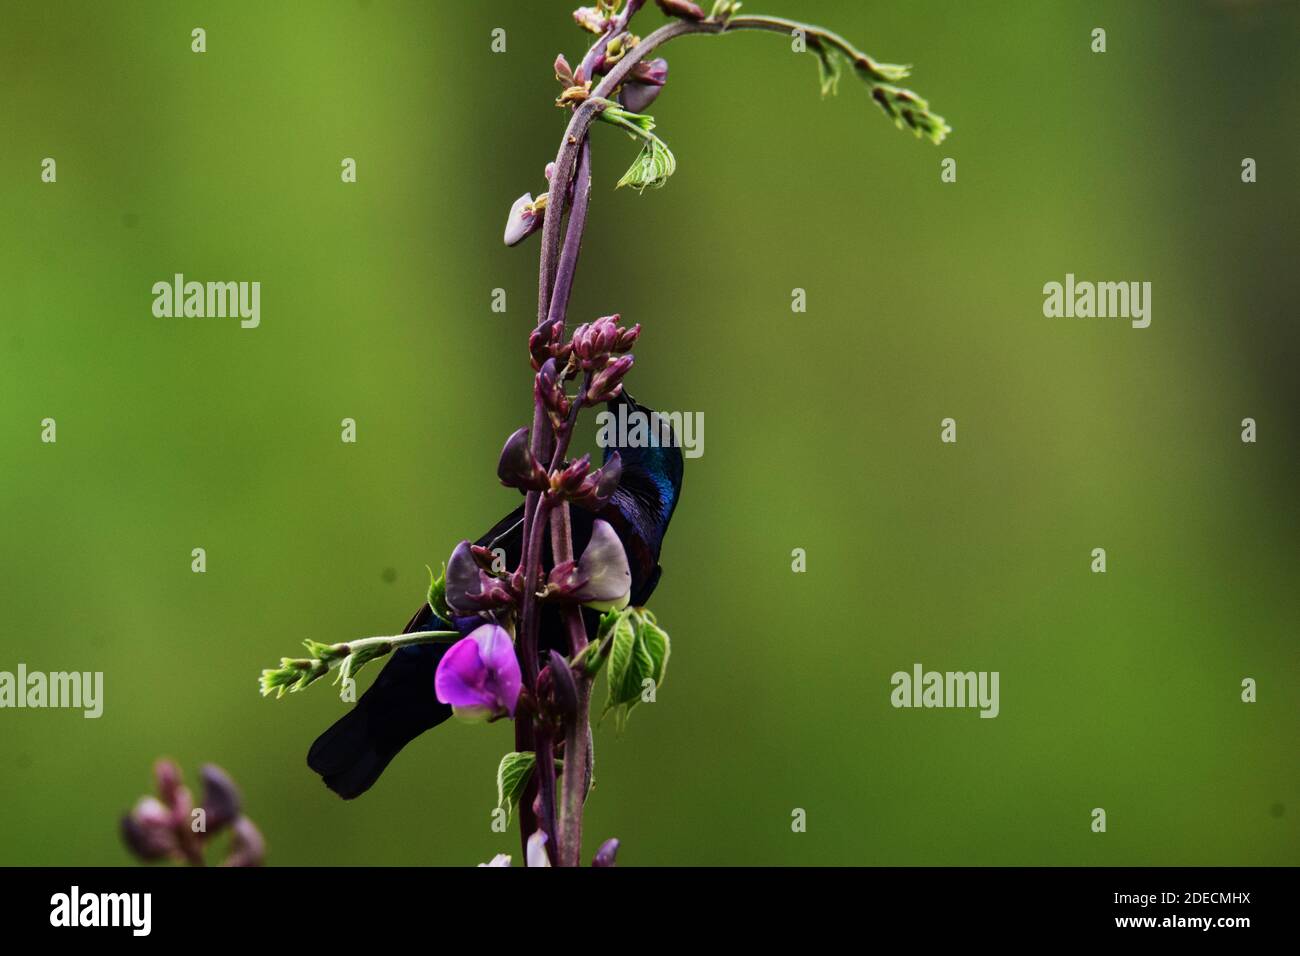 loten's sunbird hanging in the plant sucking nectar Stock Photo